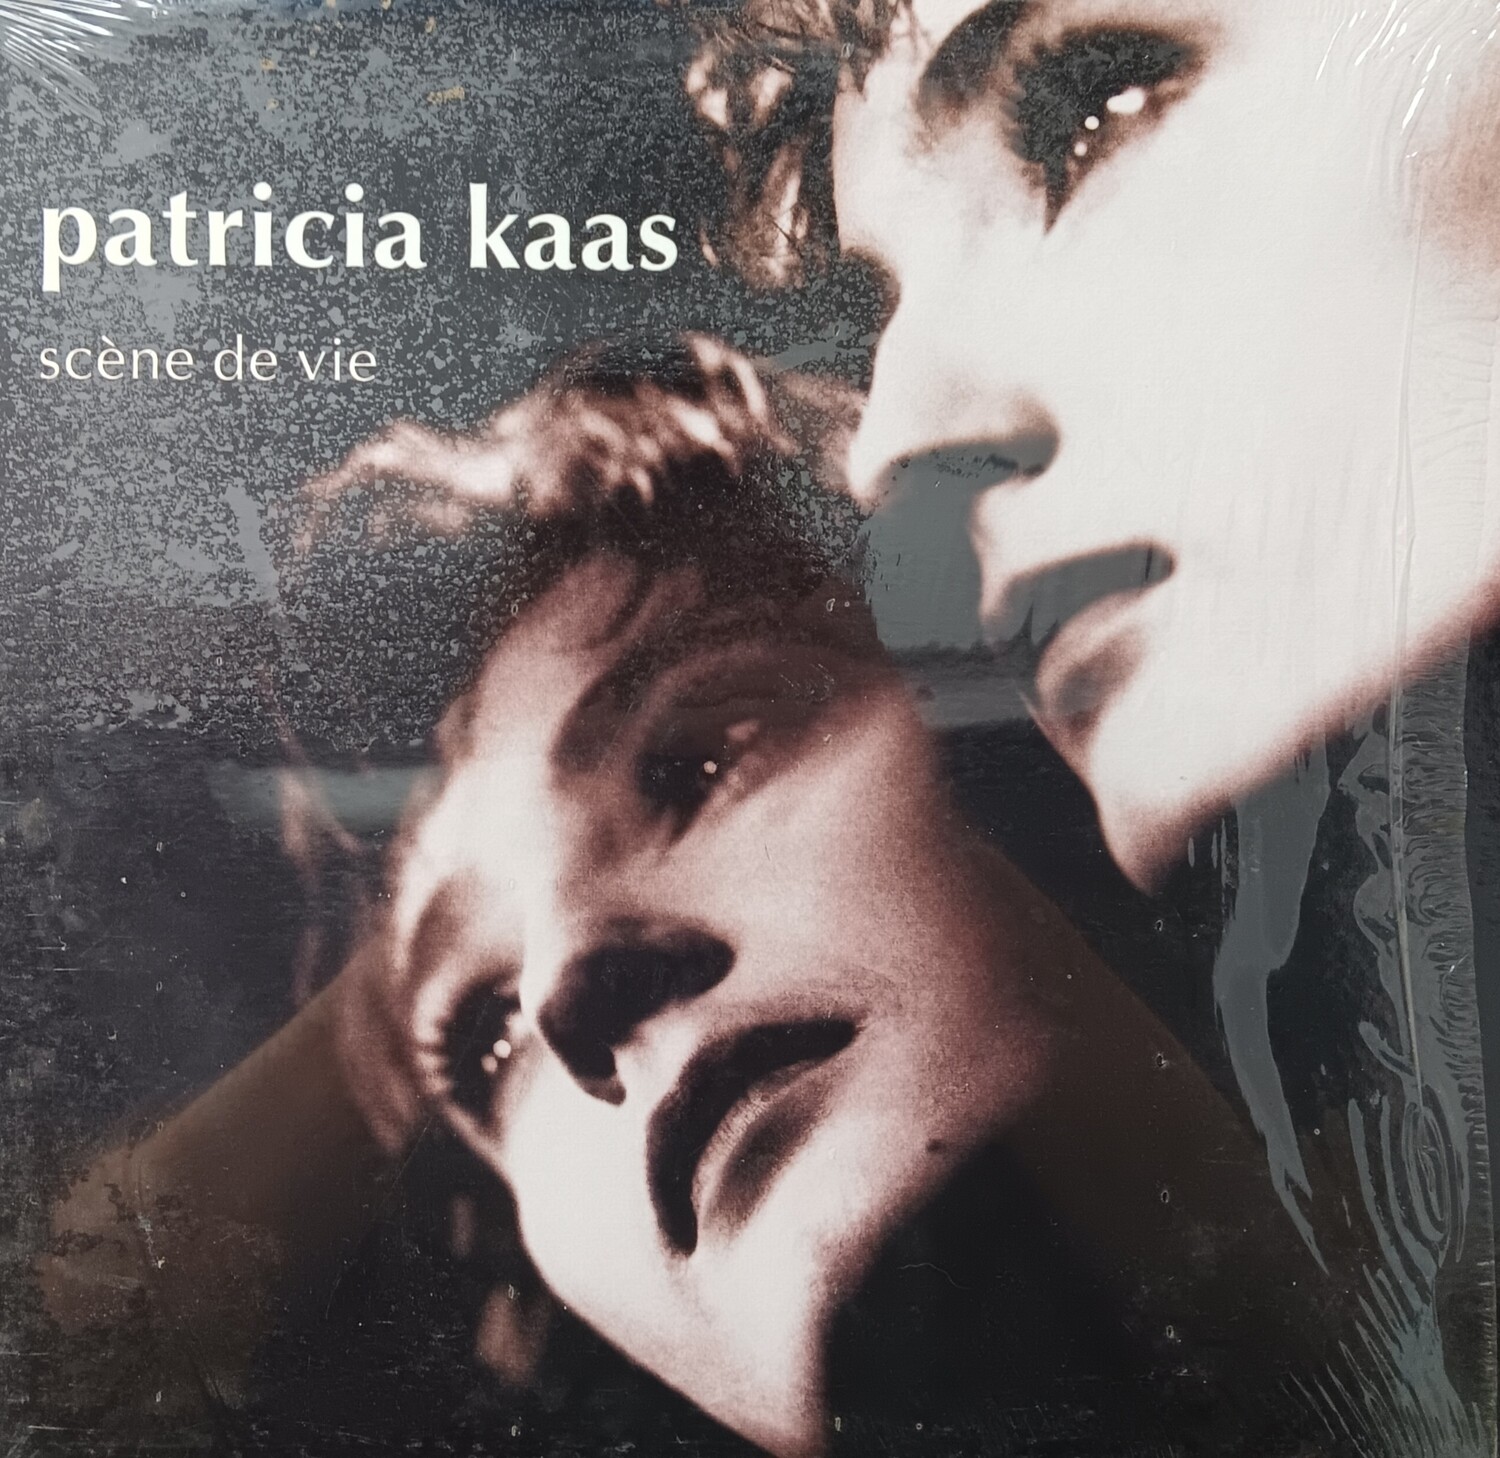 PATRICIA KAAS - Scène de vie